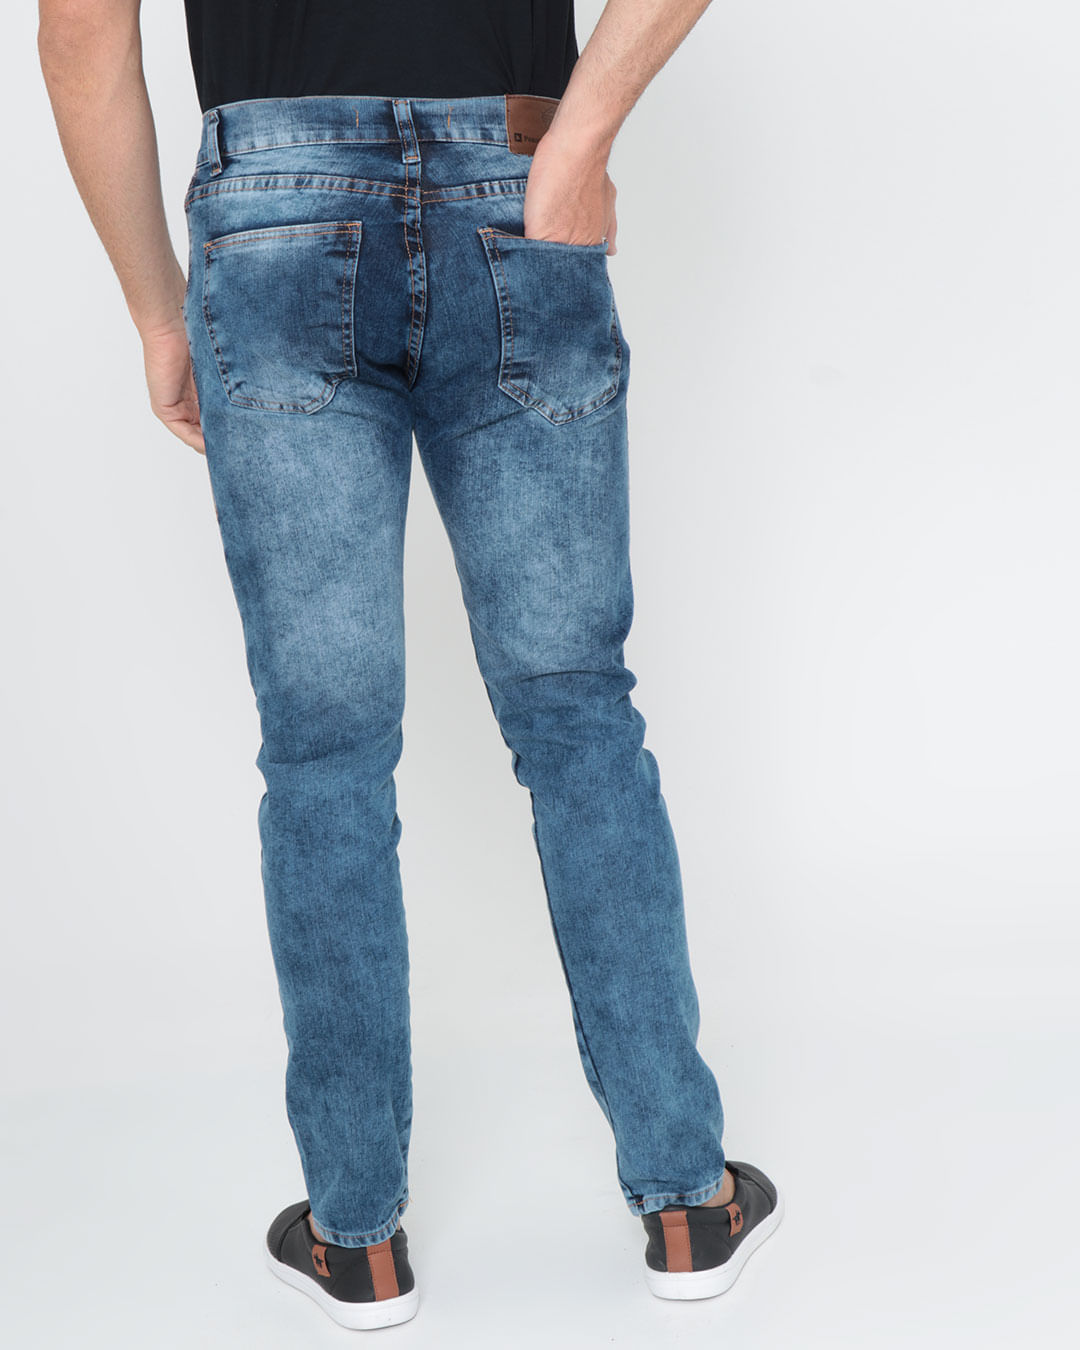 Calca-Jeans-Masculina-Skinny-Marmorizada-Azul-Escuro